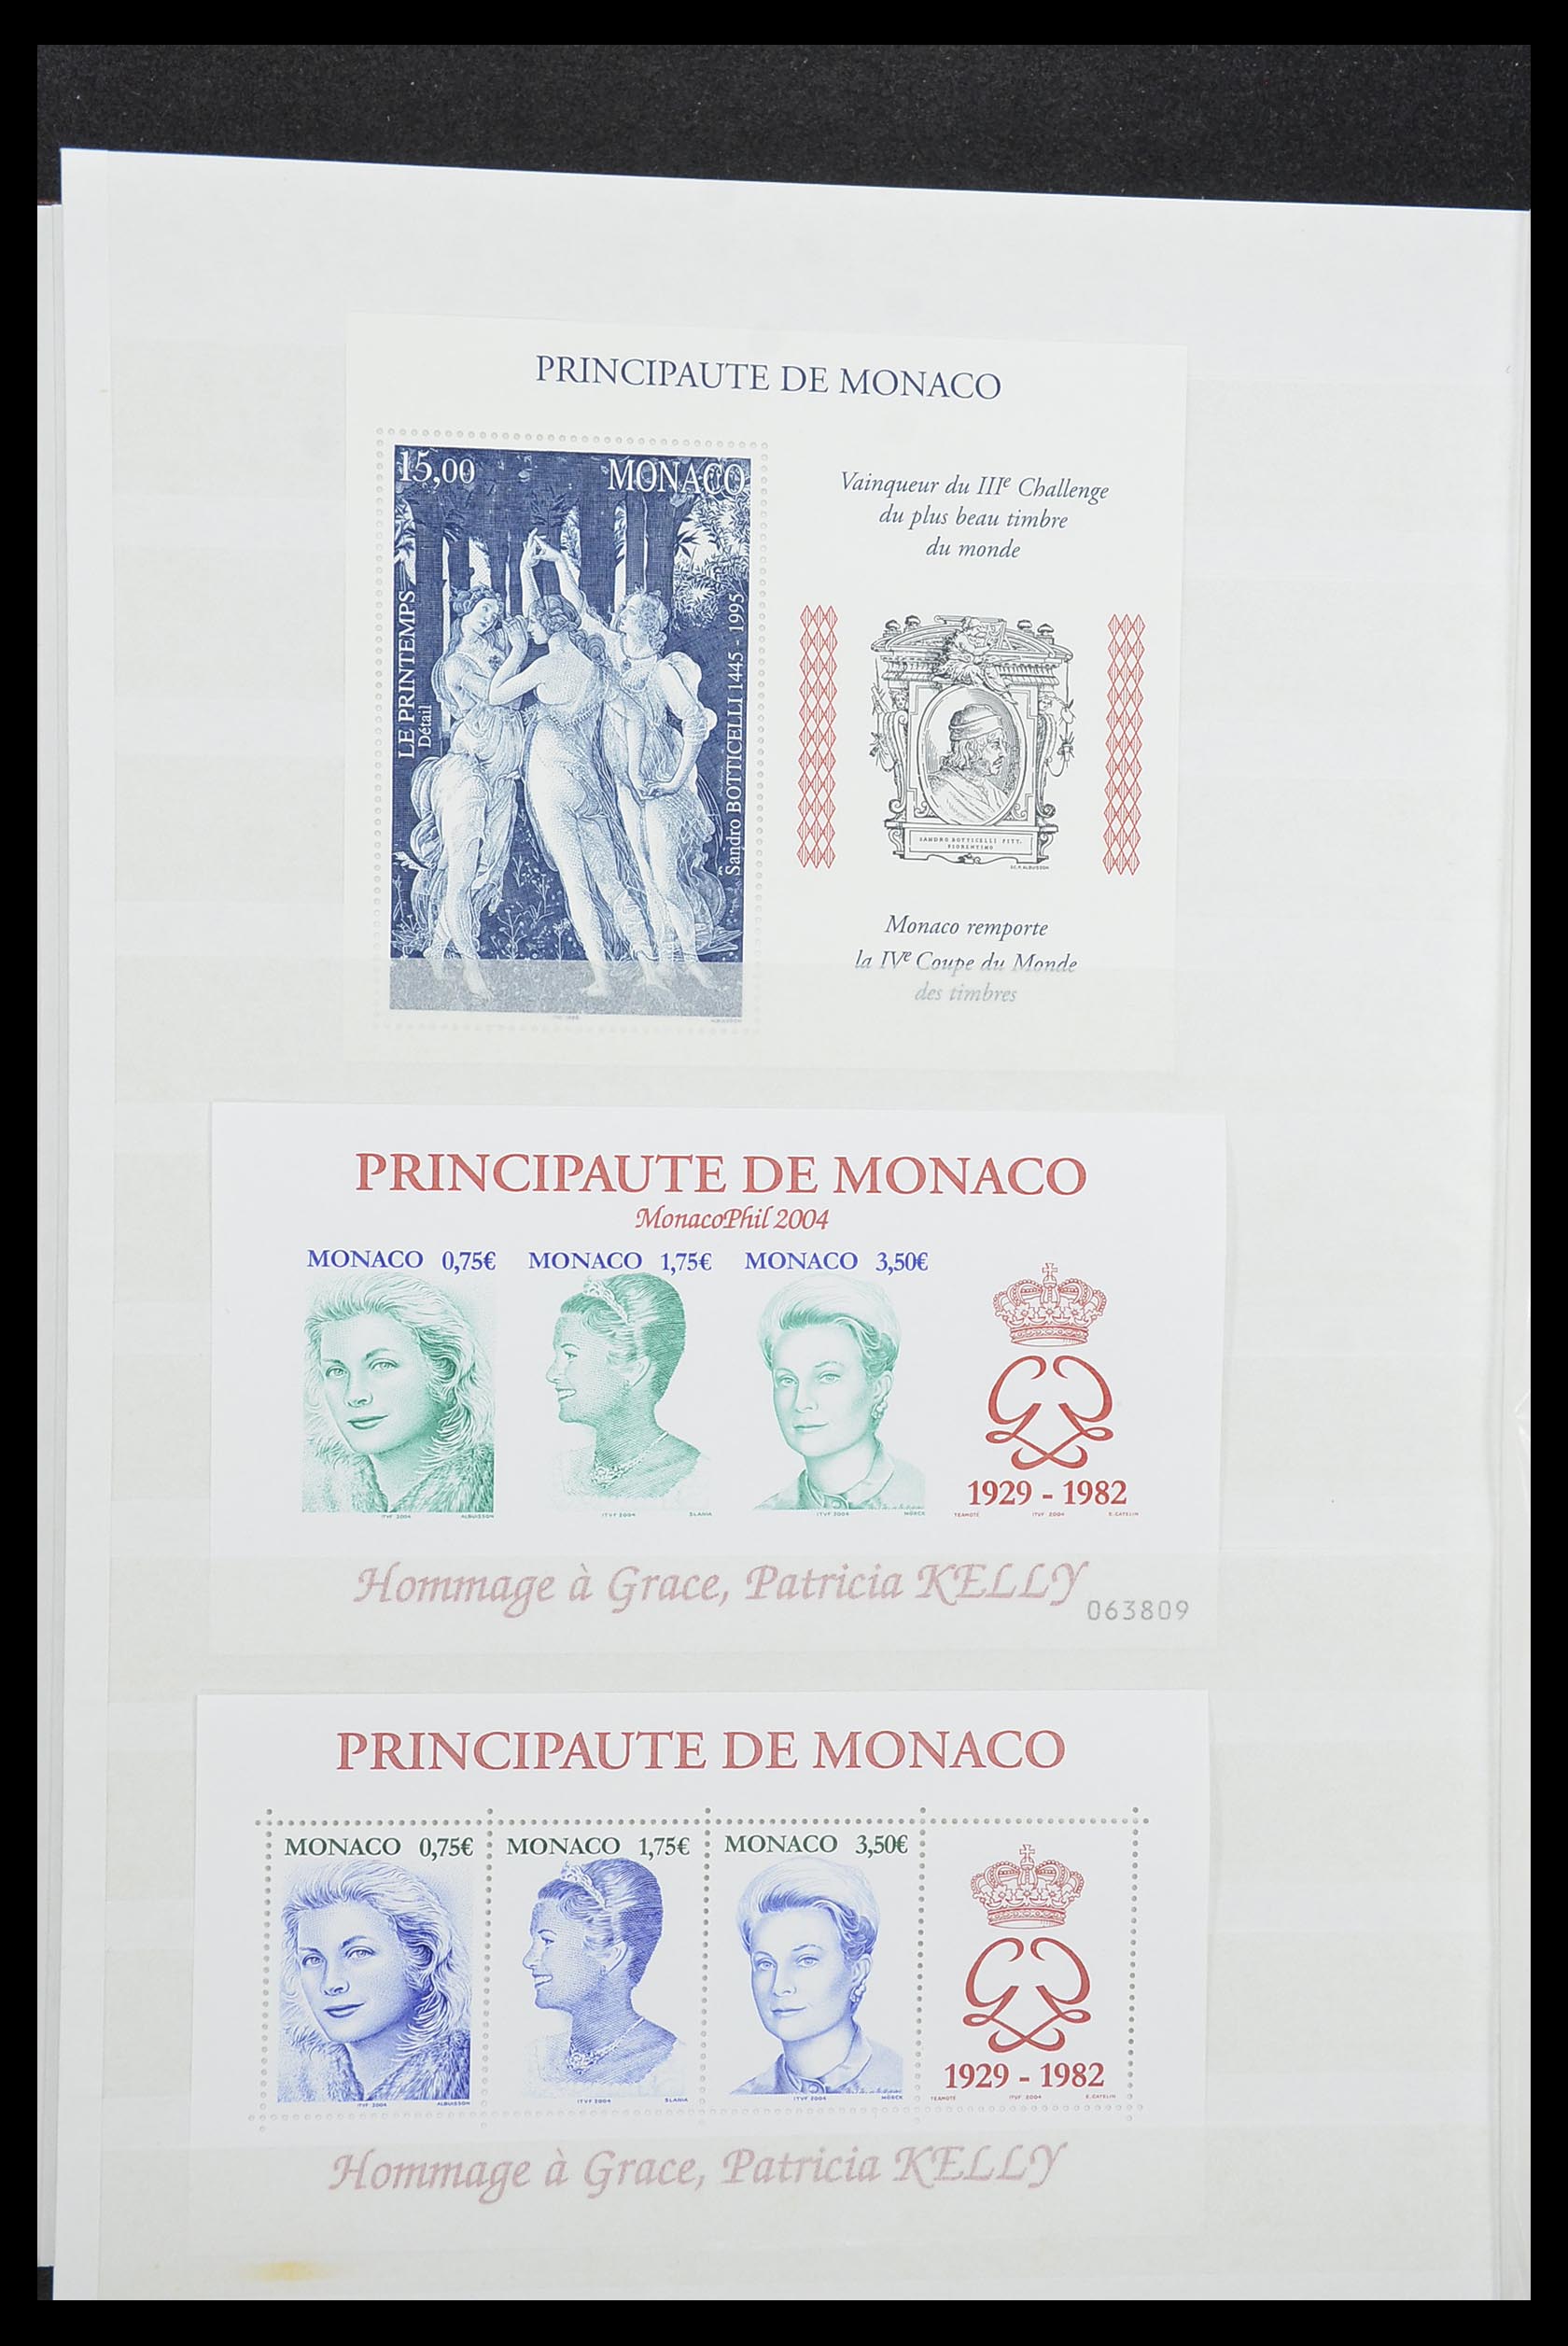 33833 036 - Stamp collection 33833 Monaco souvenir sheets 1979-2015.